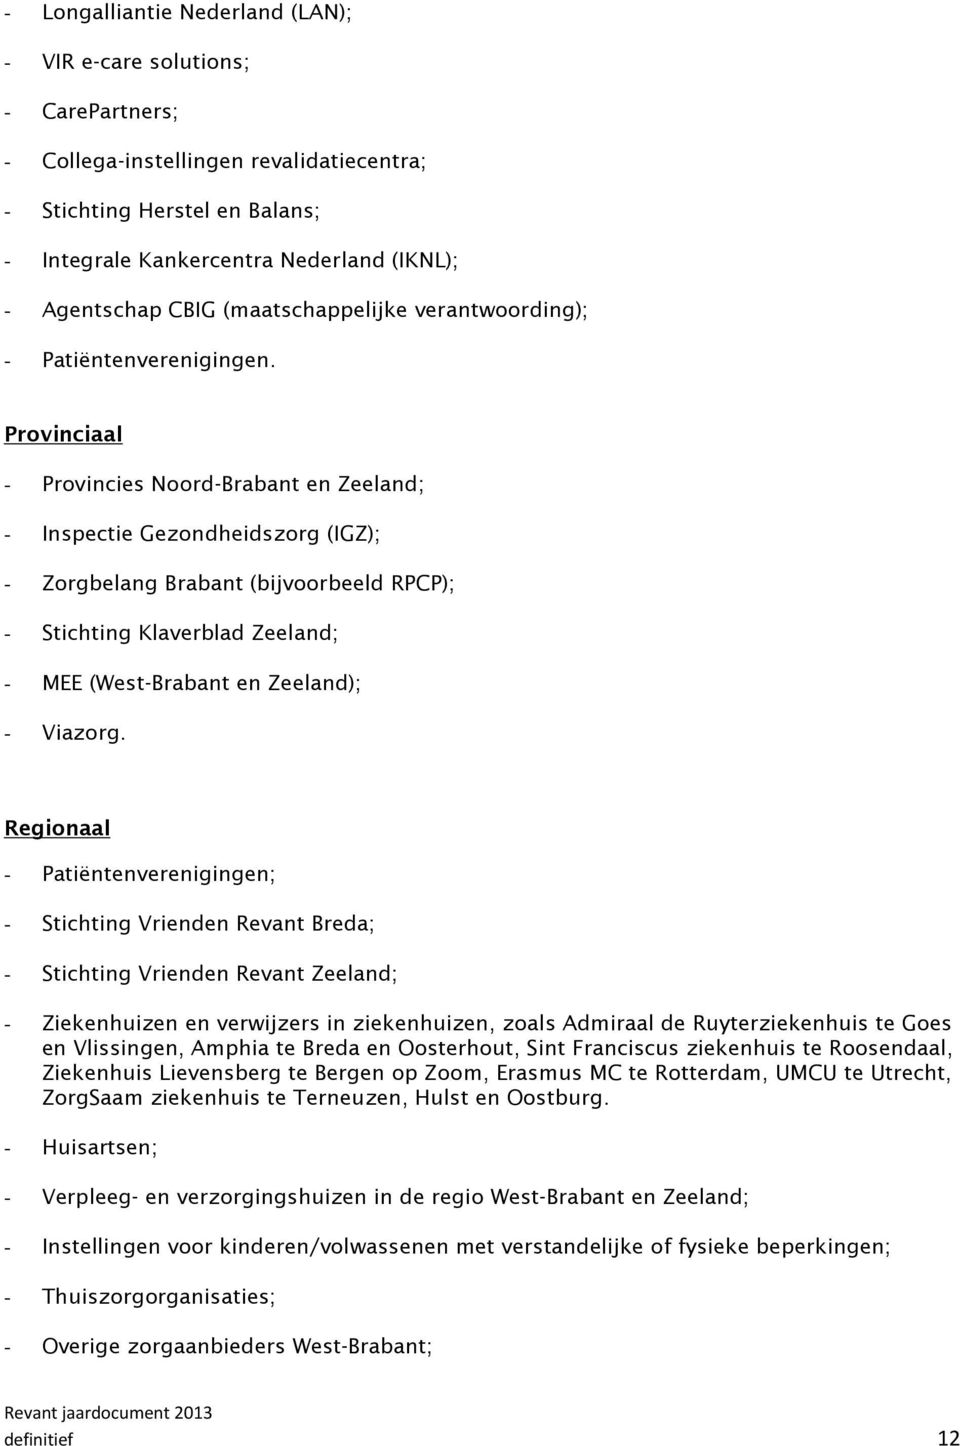 Provinciaal - Provincies Noord-Brabant en Zeeland; - Inspectie Gezondheidszorg (IGZ); - Zorgbelang Brabant (bijvoorbeeld RPCP); - Stichting Klaverblad Zeeland; - MEE (West-Brabant en Zeeland); -